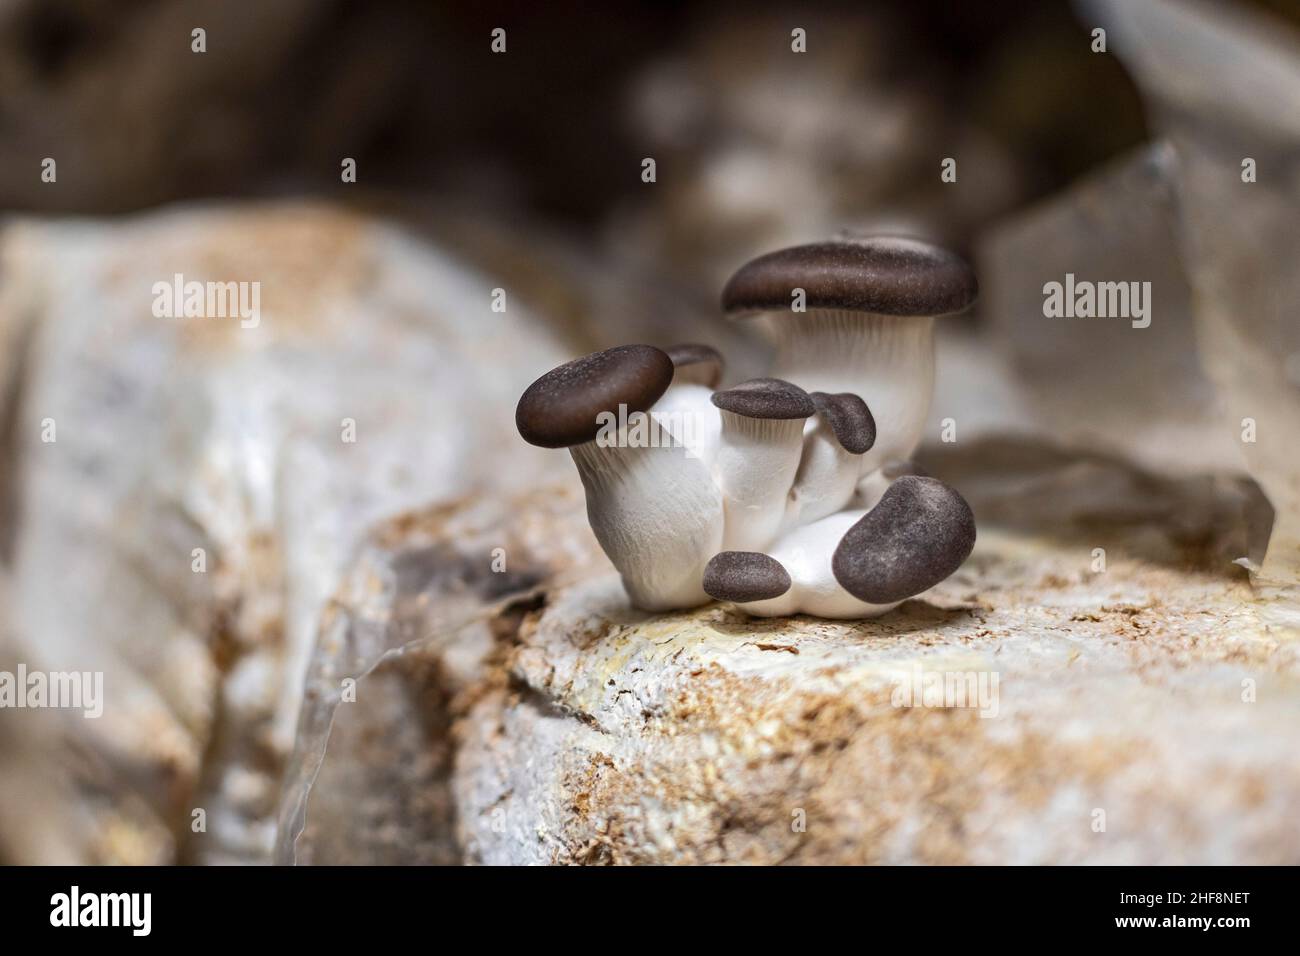 Bennett, Colorado - champignons des perles noires poussant à des champignons de la Lune de sucre.La ferme intérieure cultive une variété de champignons dans des conteneurs d'expédition.Leur Banque D'Images